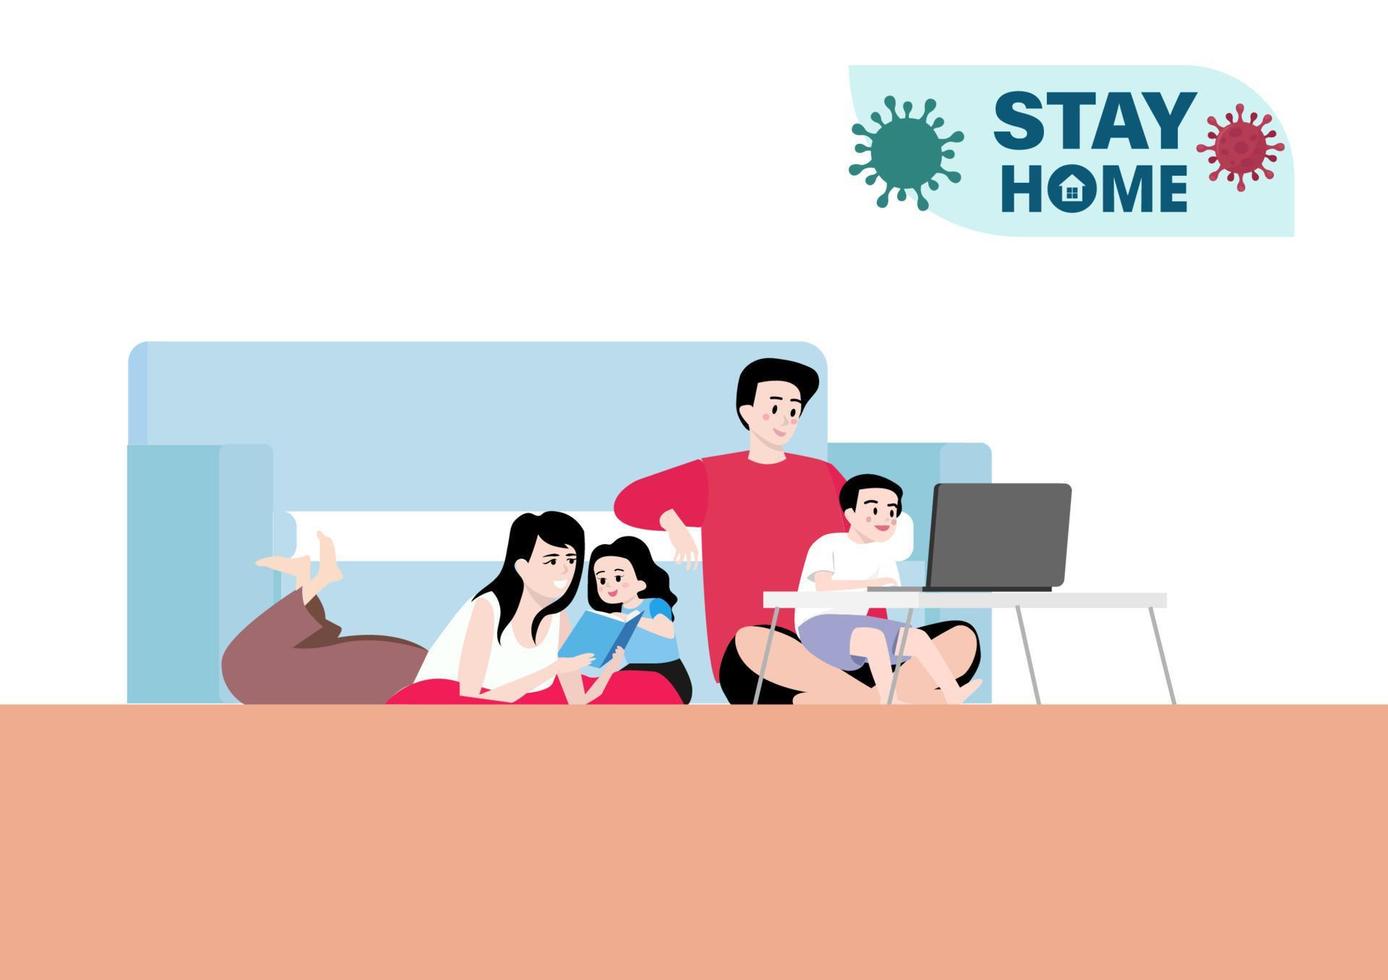 la familia feliz en casa, la madre, el padre, el hijo y las hijas están a salvo y evitan la propagación del coronavirus en el hogar, la comunicación entre padres e hijos. vector de ilustración plana